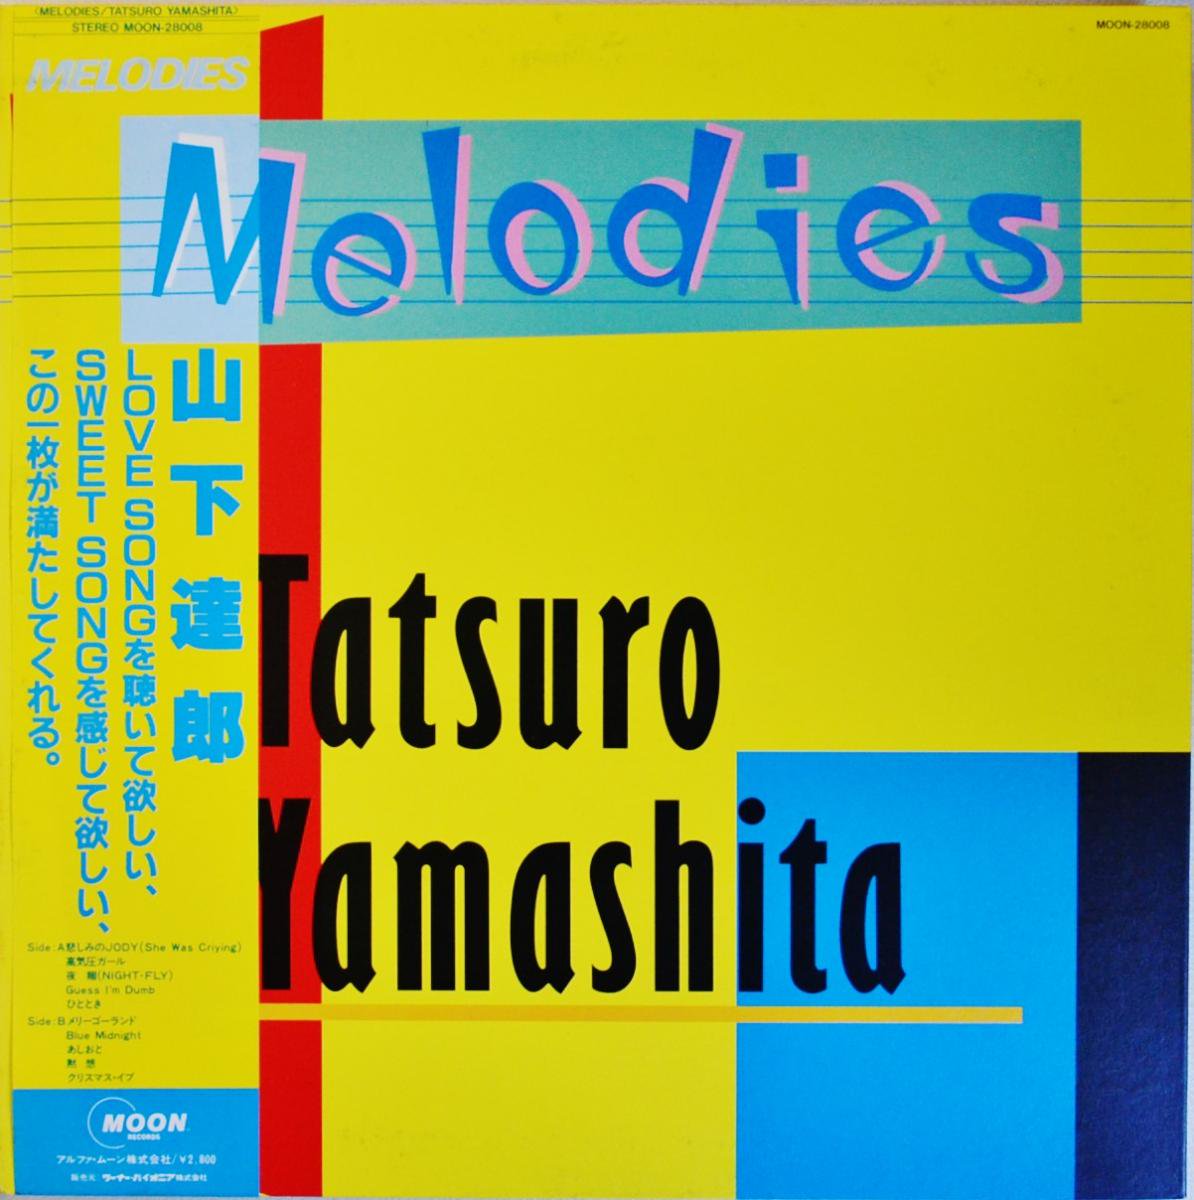 山下達郎 TATSURO YAMASHITA / メロディーズ MELODIES (LP